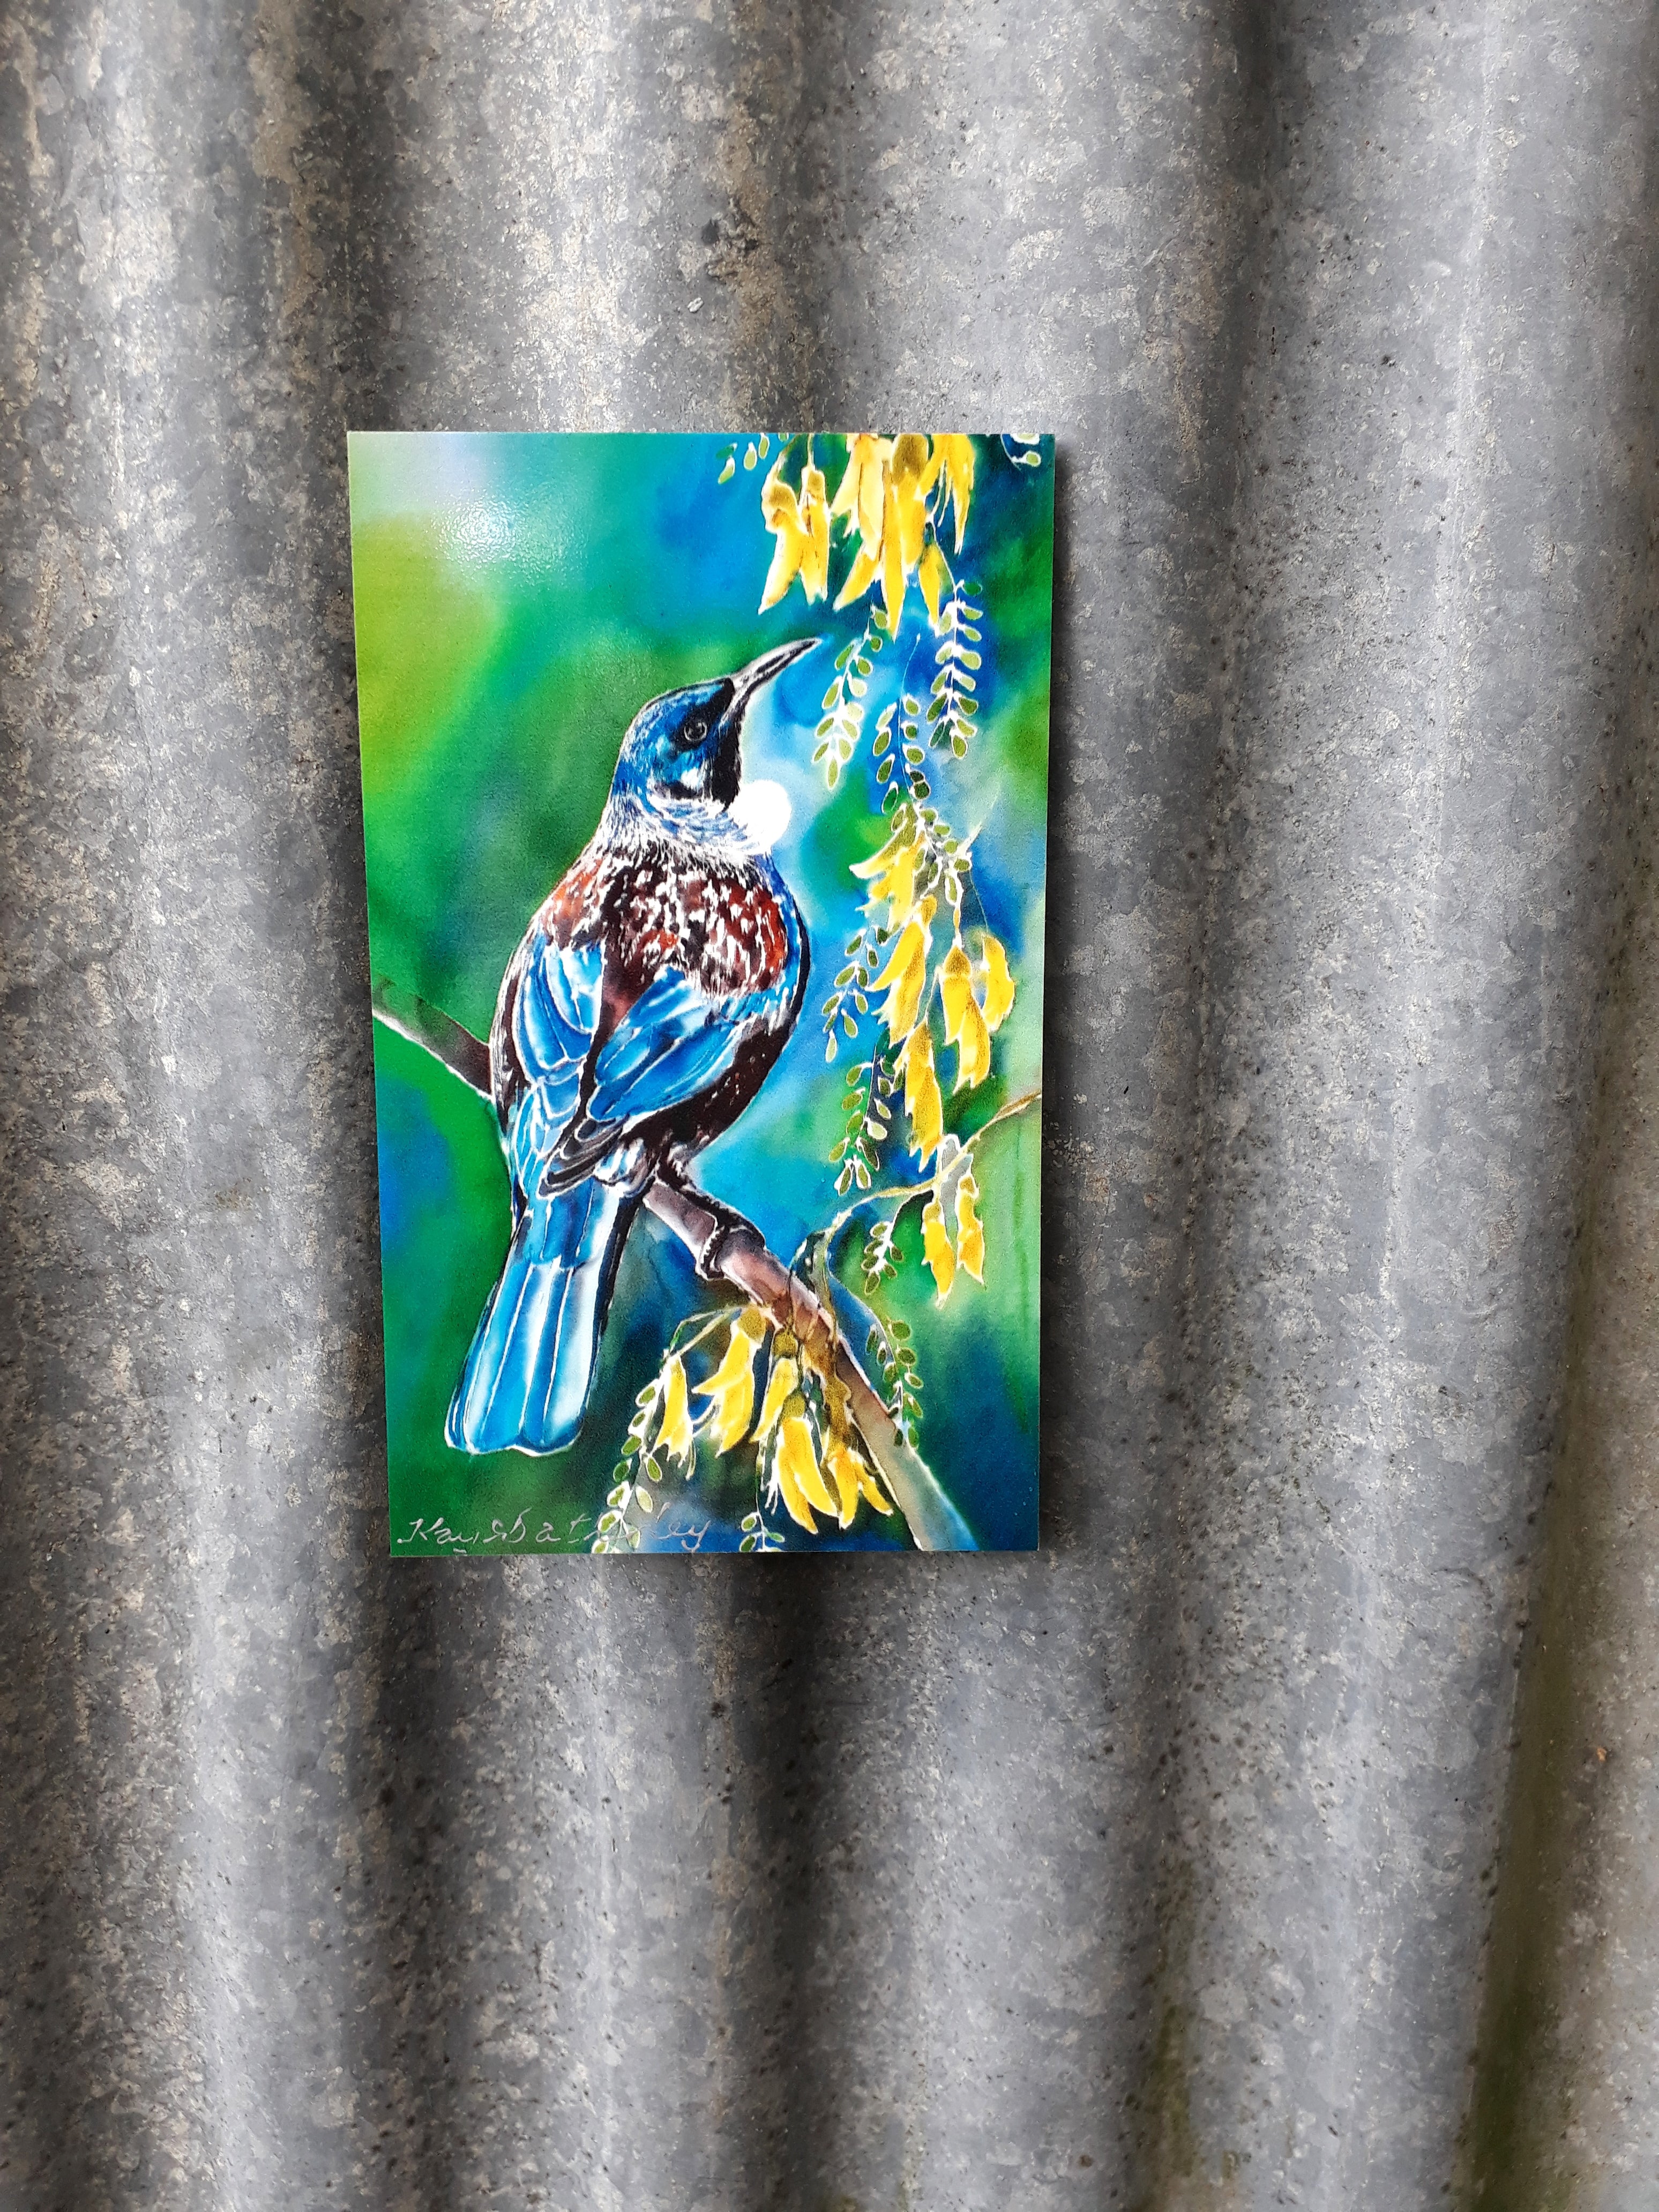 New Zealand Tui Bird on Kowhai Tree - Outdoor Garden Art tile Mini Panel. - Satherley Silks NZ